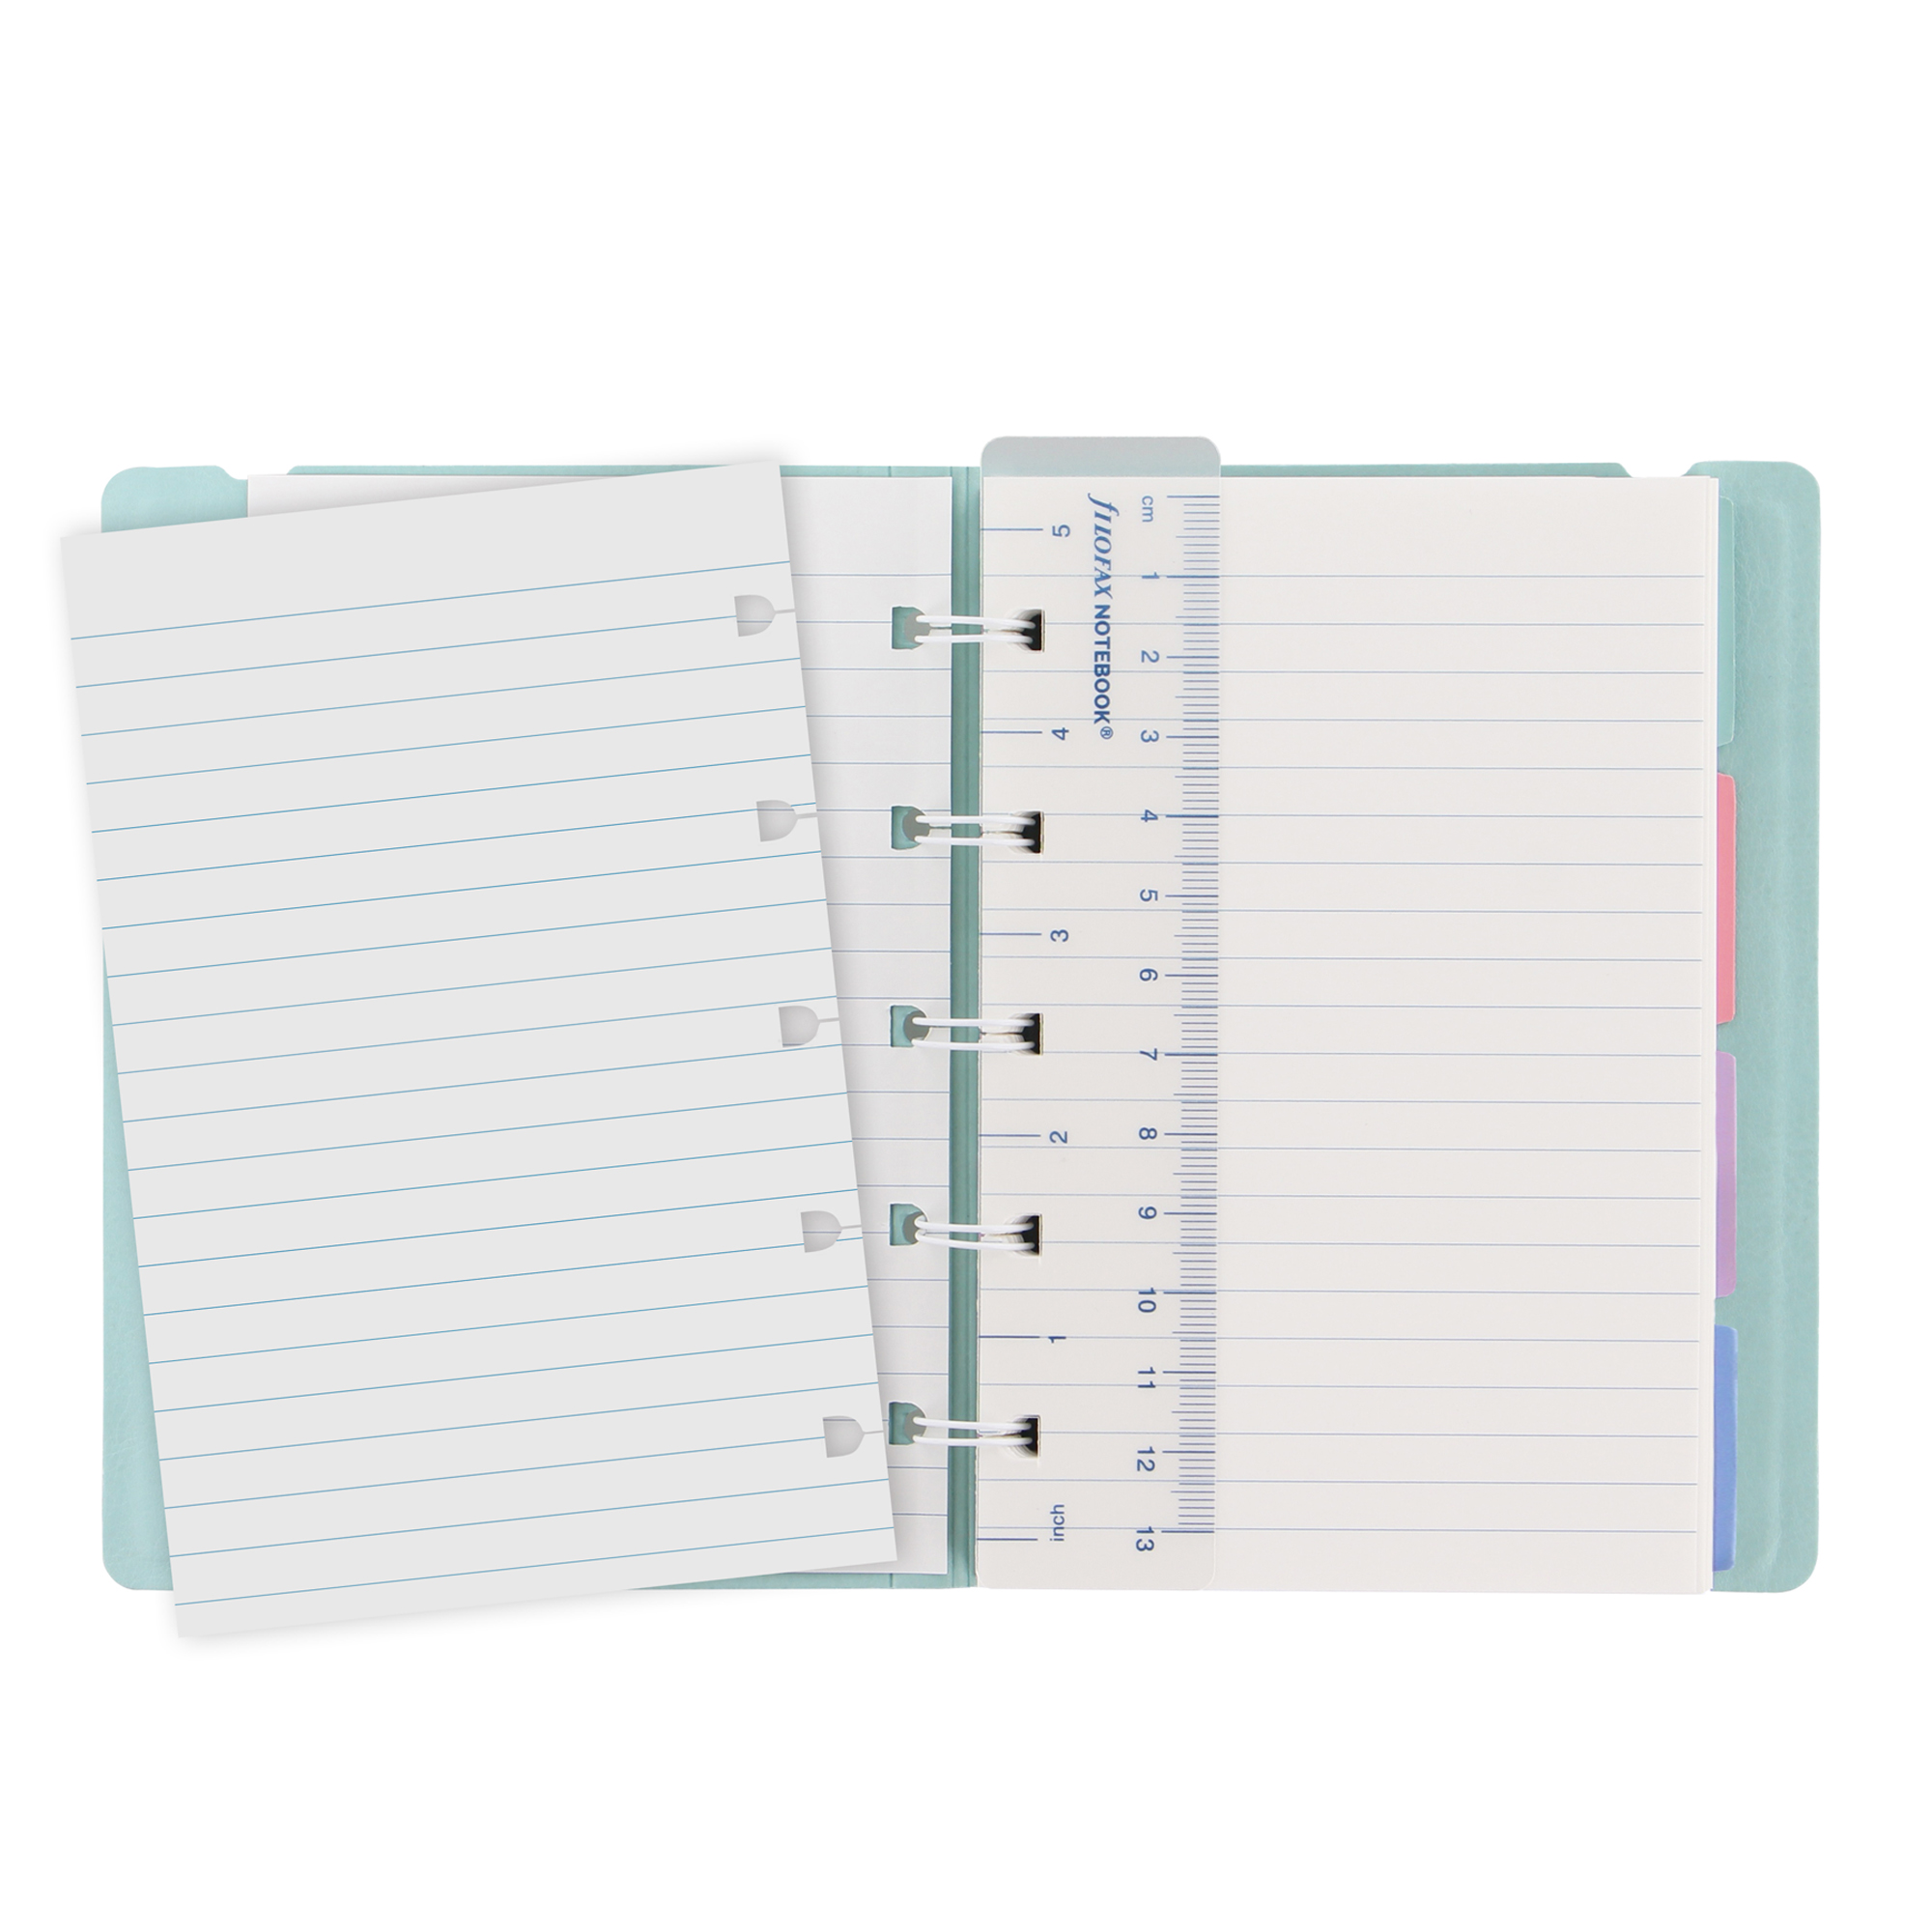 Notebook Pocket - con elastico - copertina similpelle - 144 x 105 mm - 56 pagine - a righe - verde pastello - Filofax